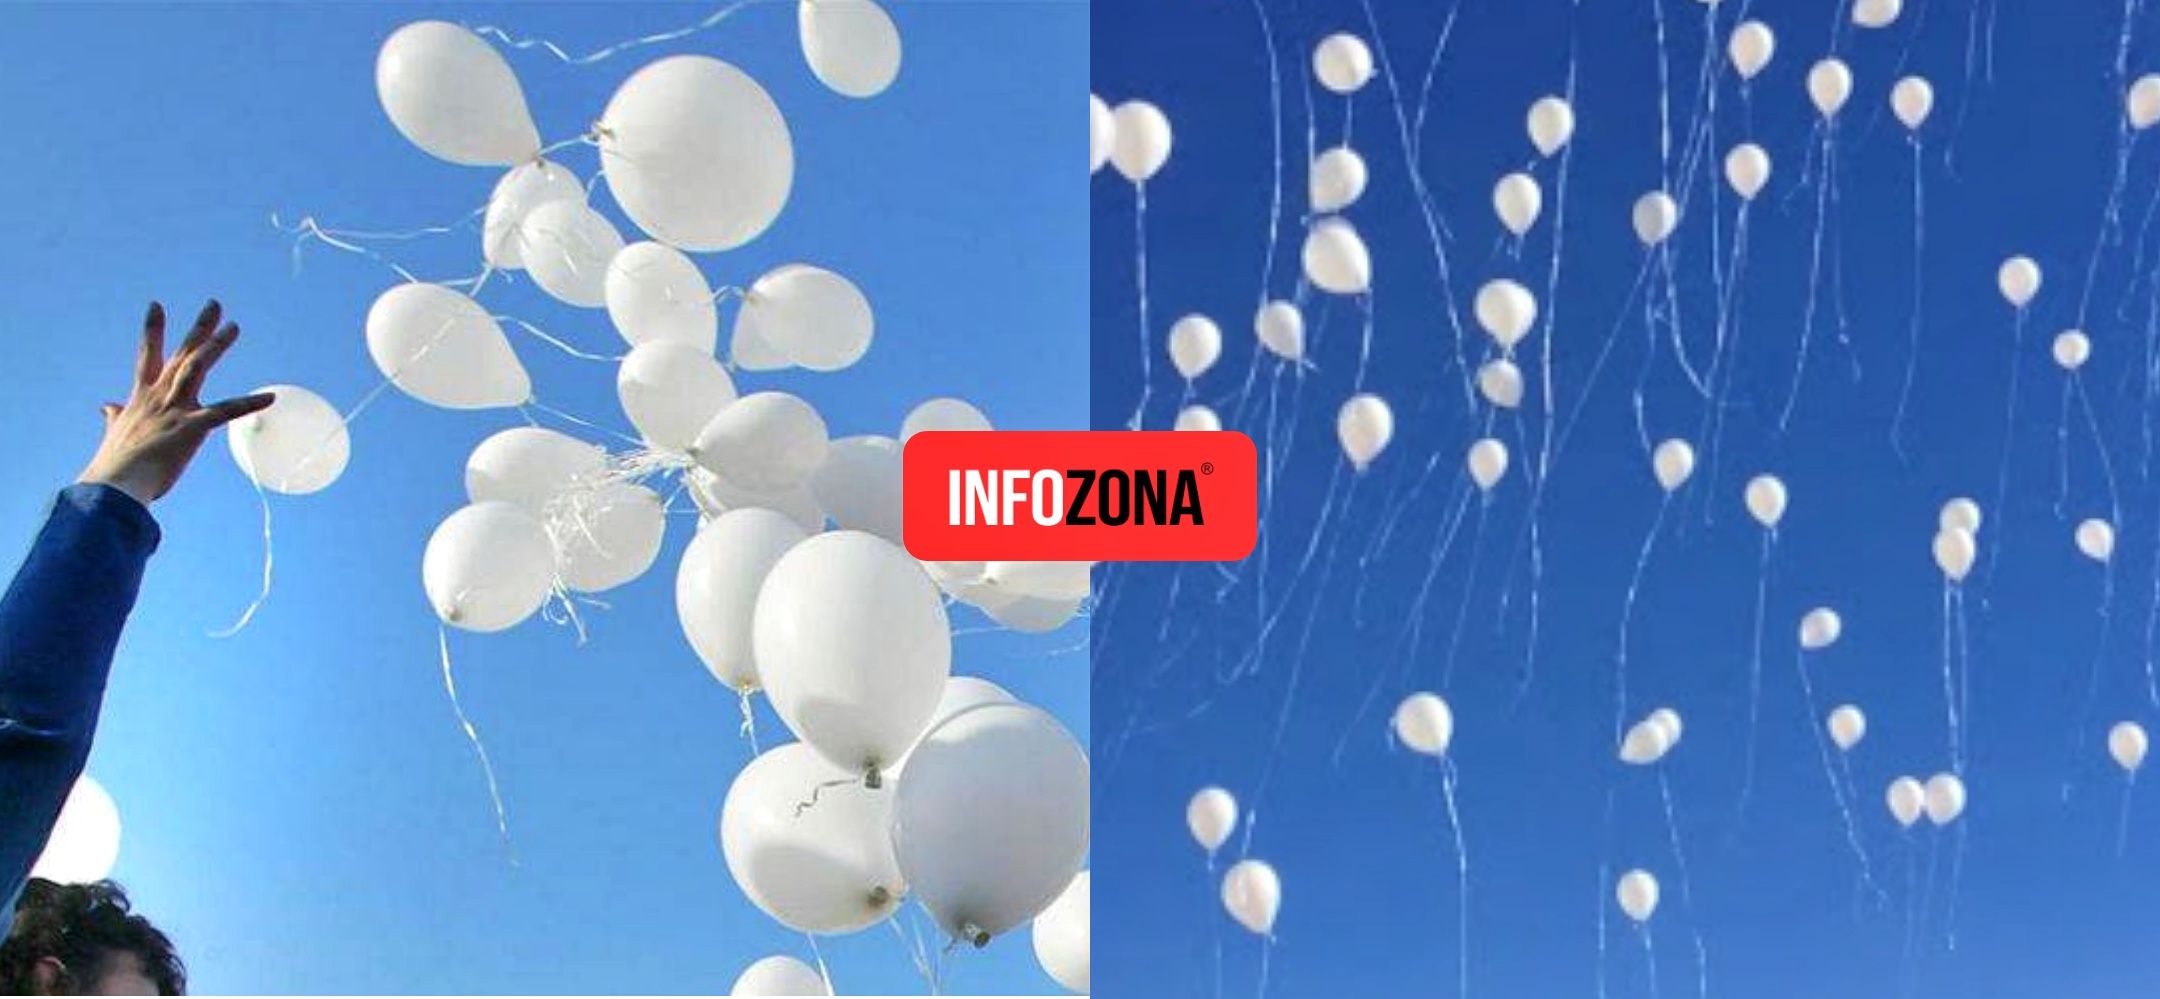 Comodoro24 - #Comodoro Proponen suelta de globos blancos: Una esperanza al  cielo Blanca Chacon vecina del barrio Pietrobelli propone hacer el 24 y el  31 una suelta de globos blancos en homenaje